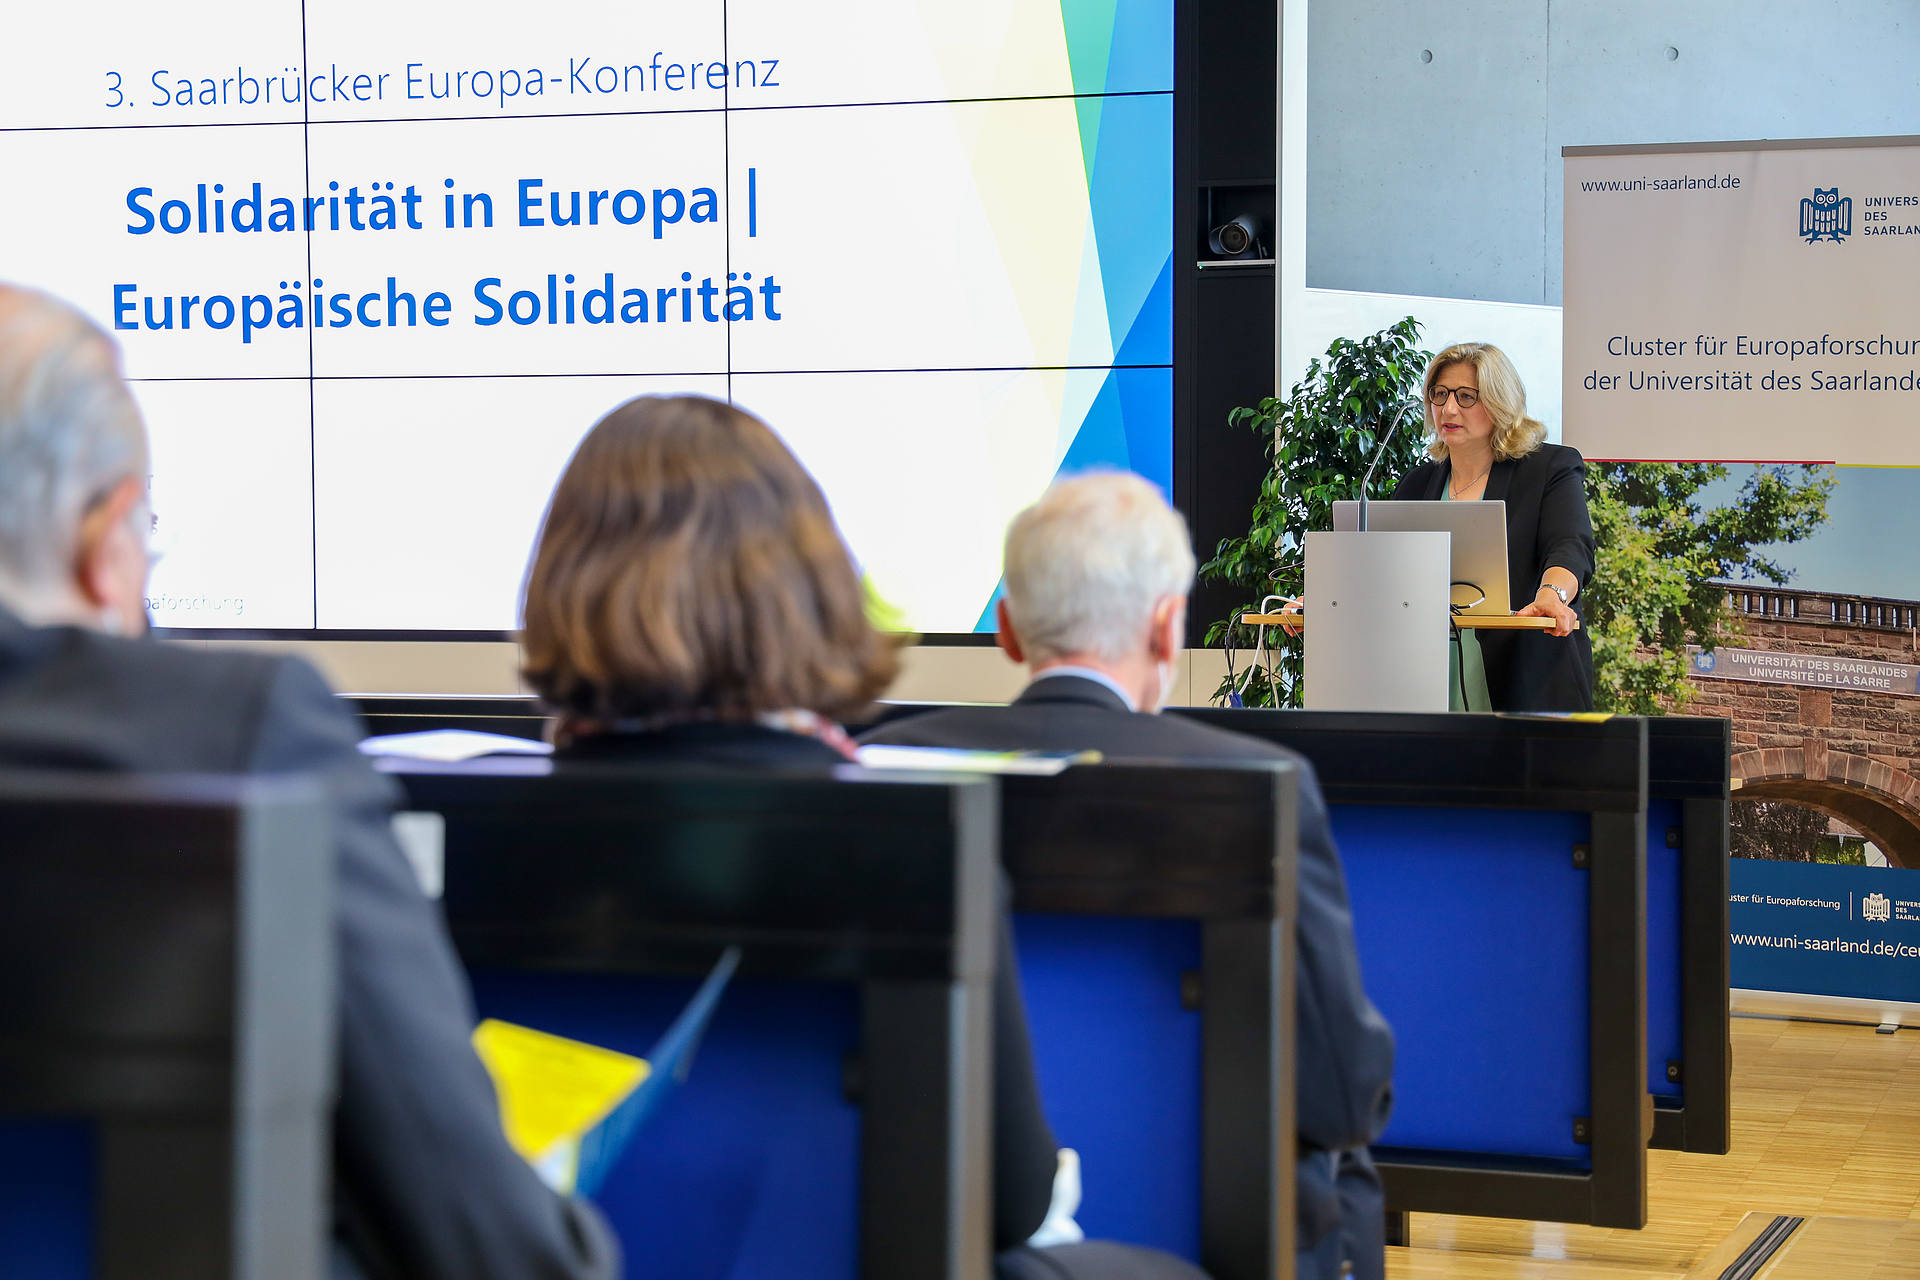 Die Ministerpräsidentin des Saarlandes, Anke Rehlinger, eröffnet die 3. Saarbrücker Europa-Konferenz mit einem Grußwort. Sie steht am Rednerinnenpult. Ein großer Bildschirm links neben ihr zeigt das Konferenzthema Solidarität in Europa, Europäische Solidarität.